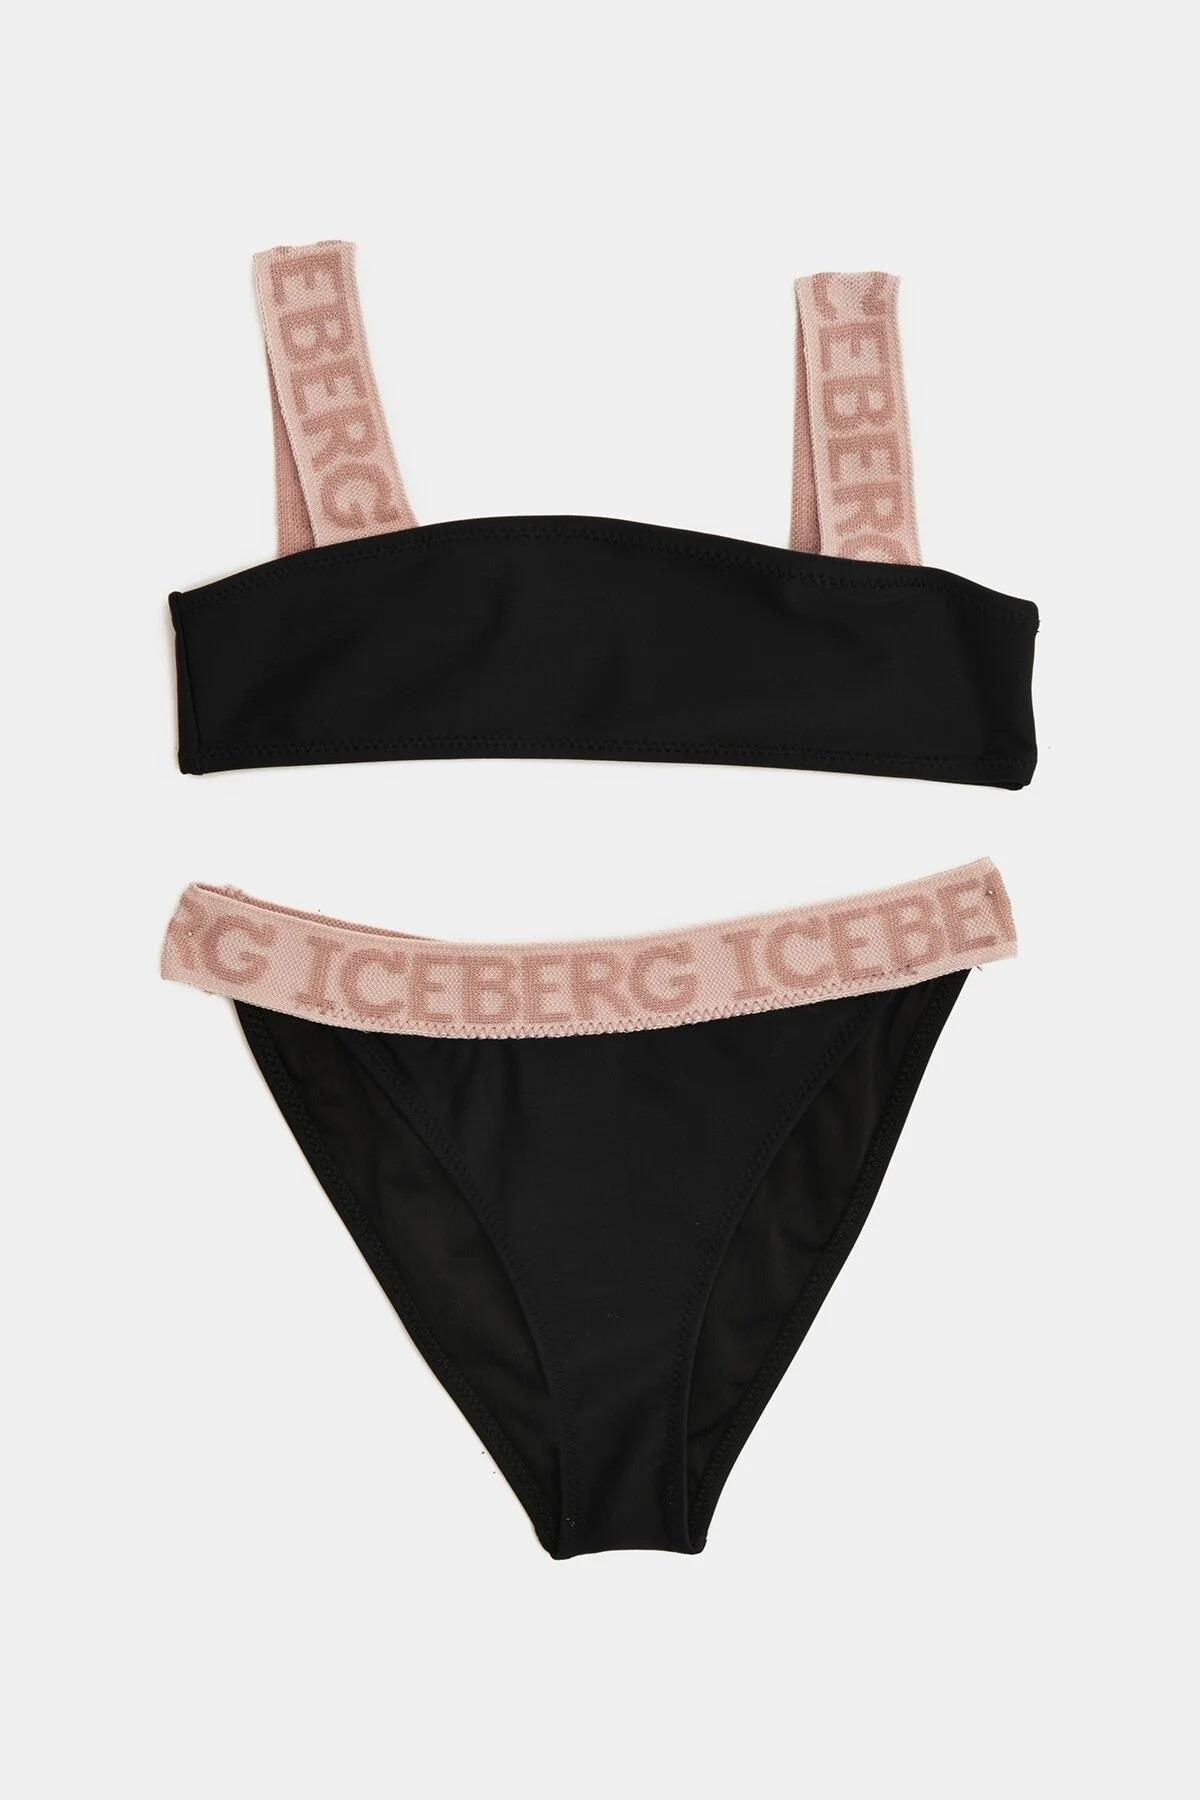 Iceberg Bg Store Kız Çocuk Siyah Bikini 22ss1ıb0153